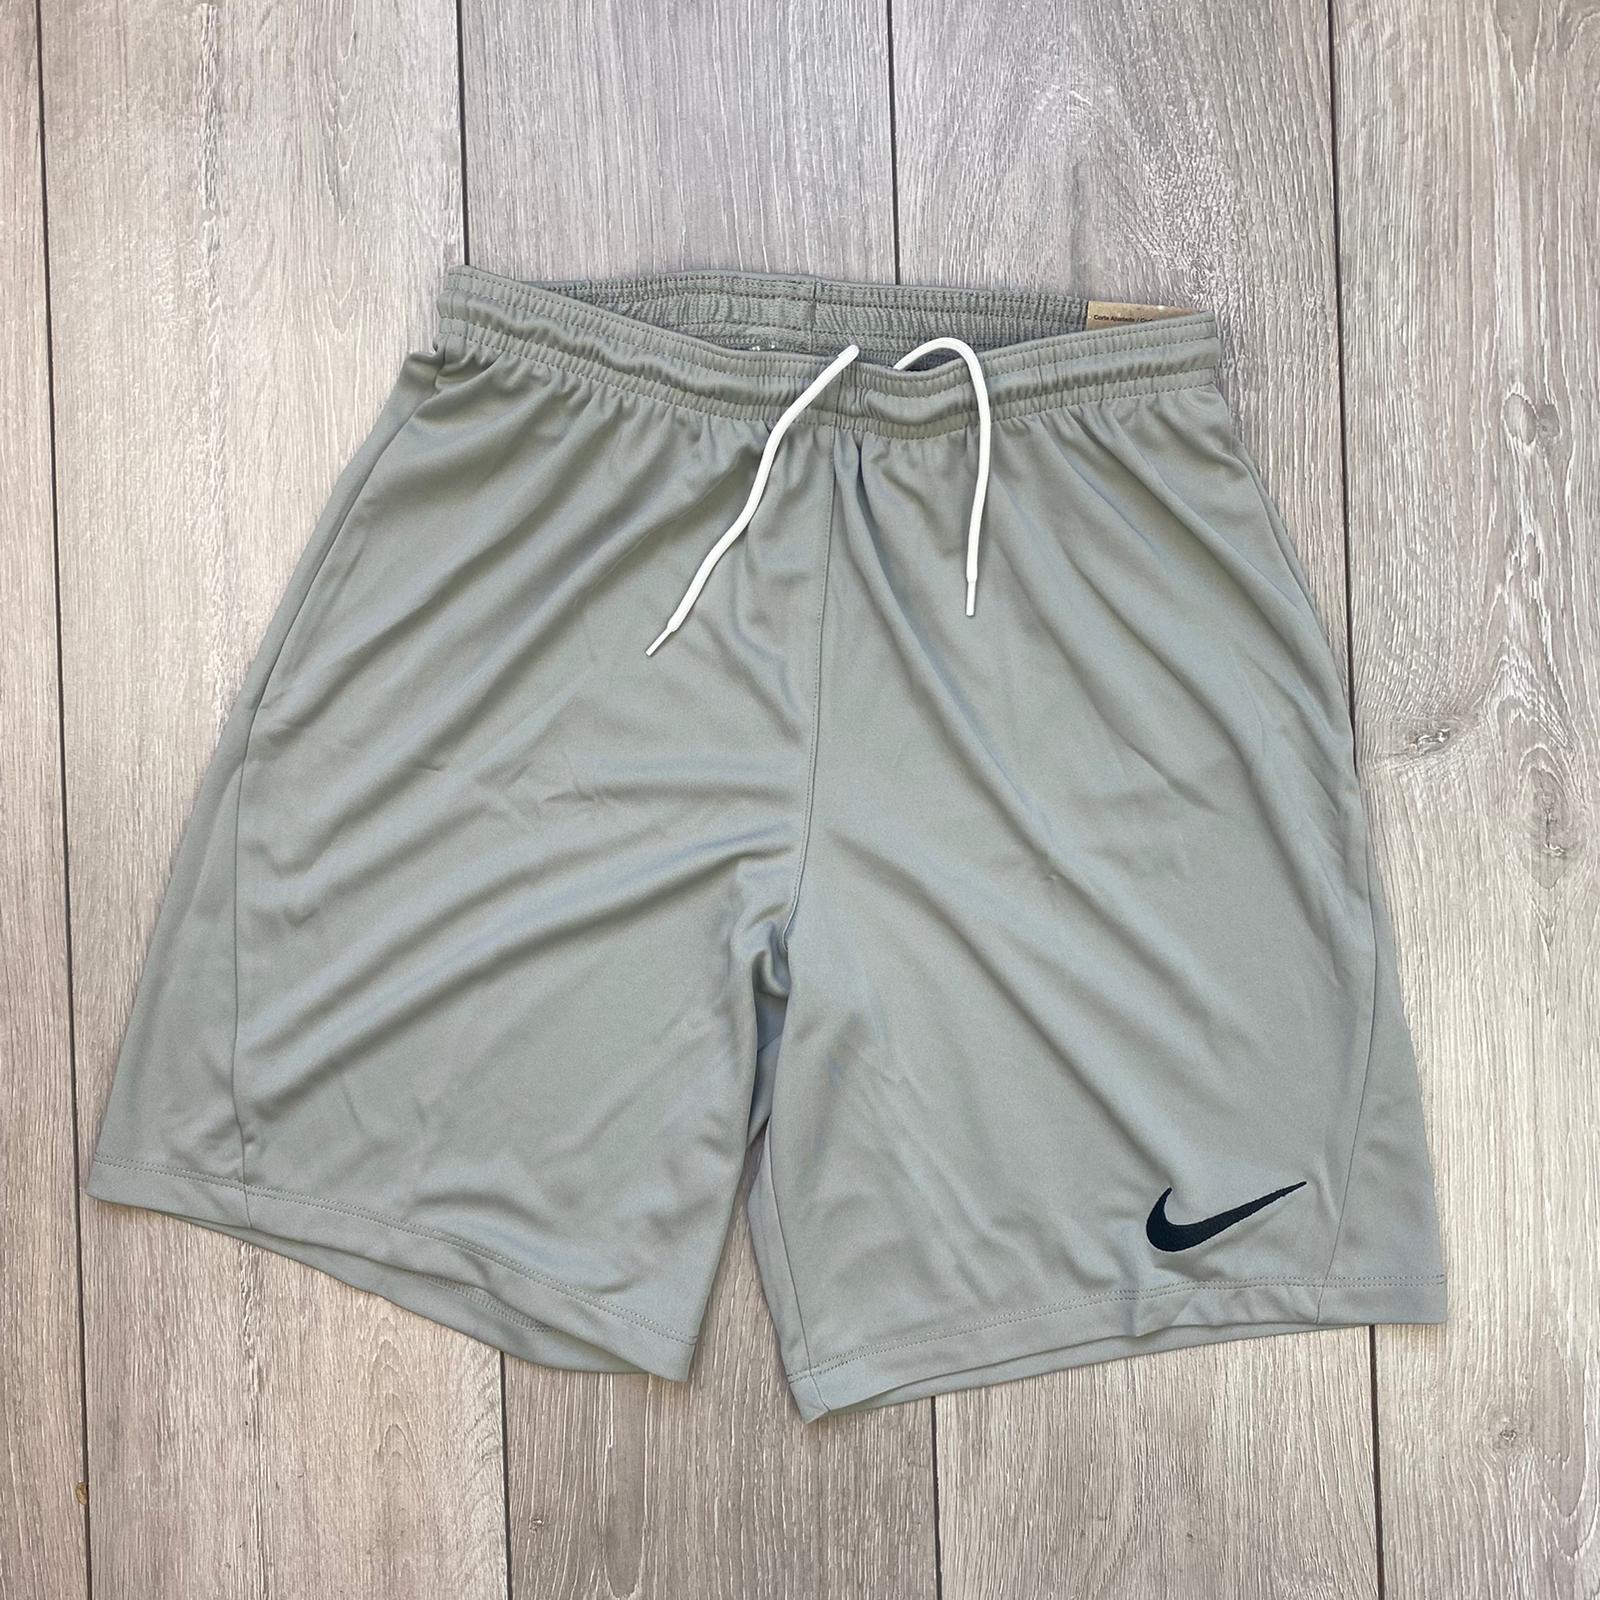 Nike Dri-Fit Set - White/Grey